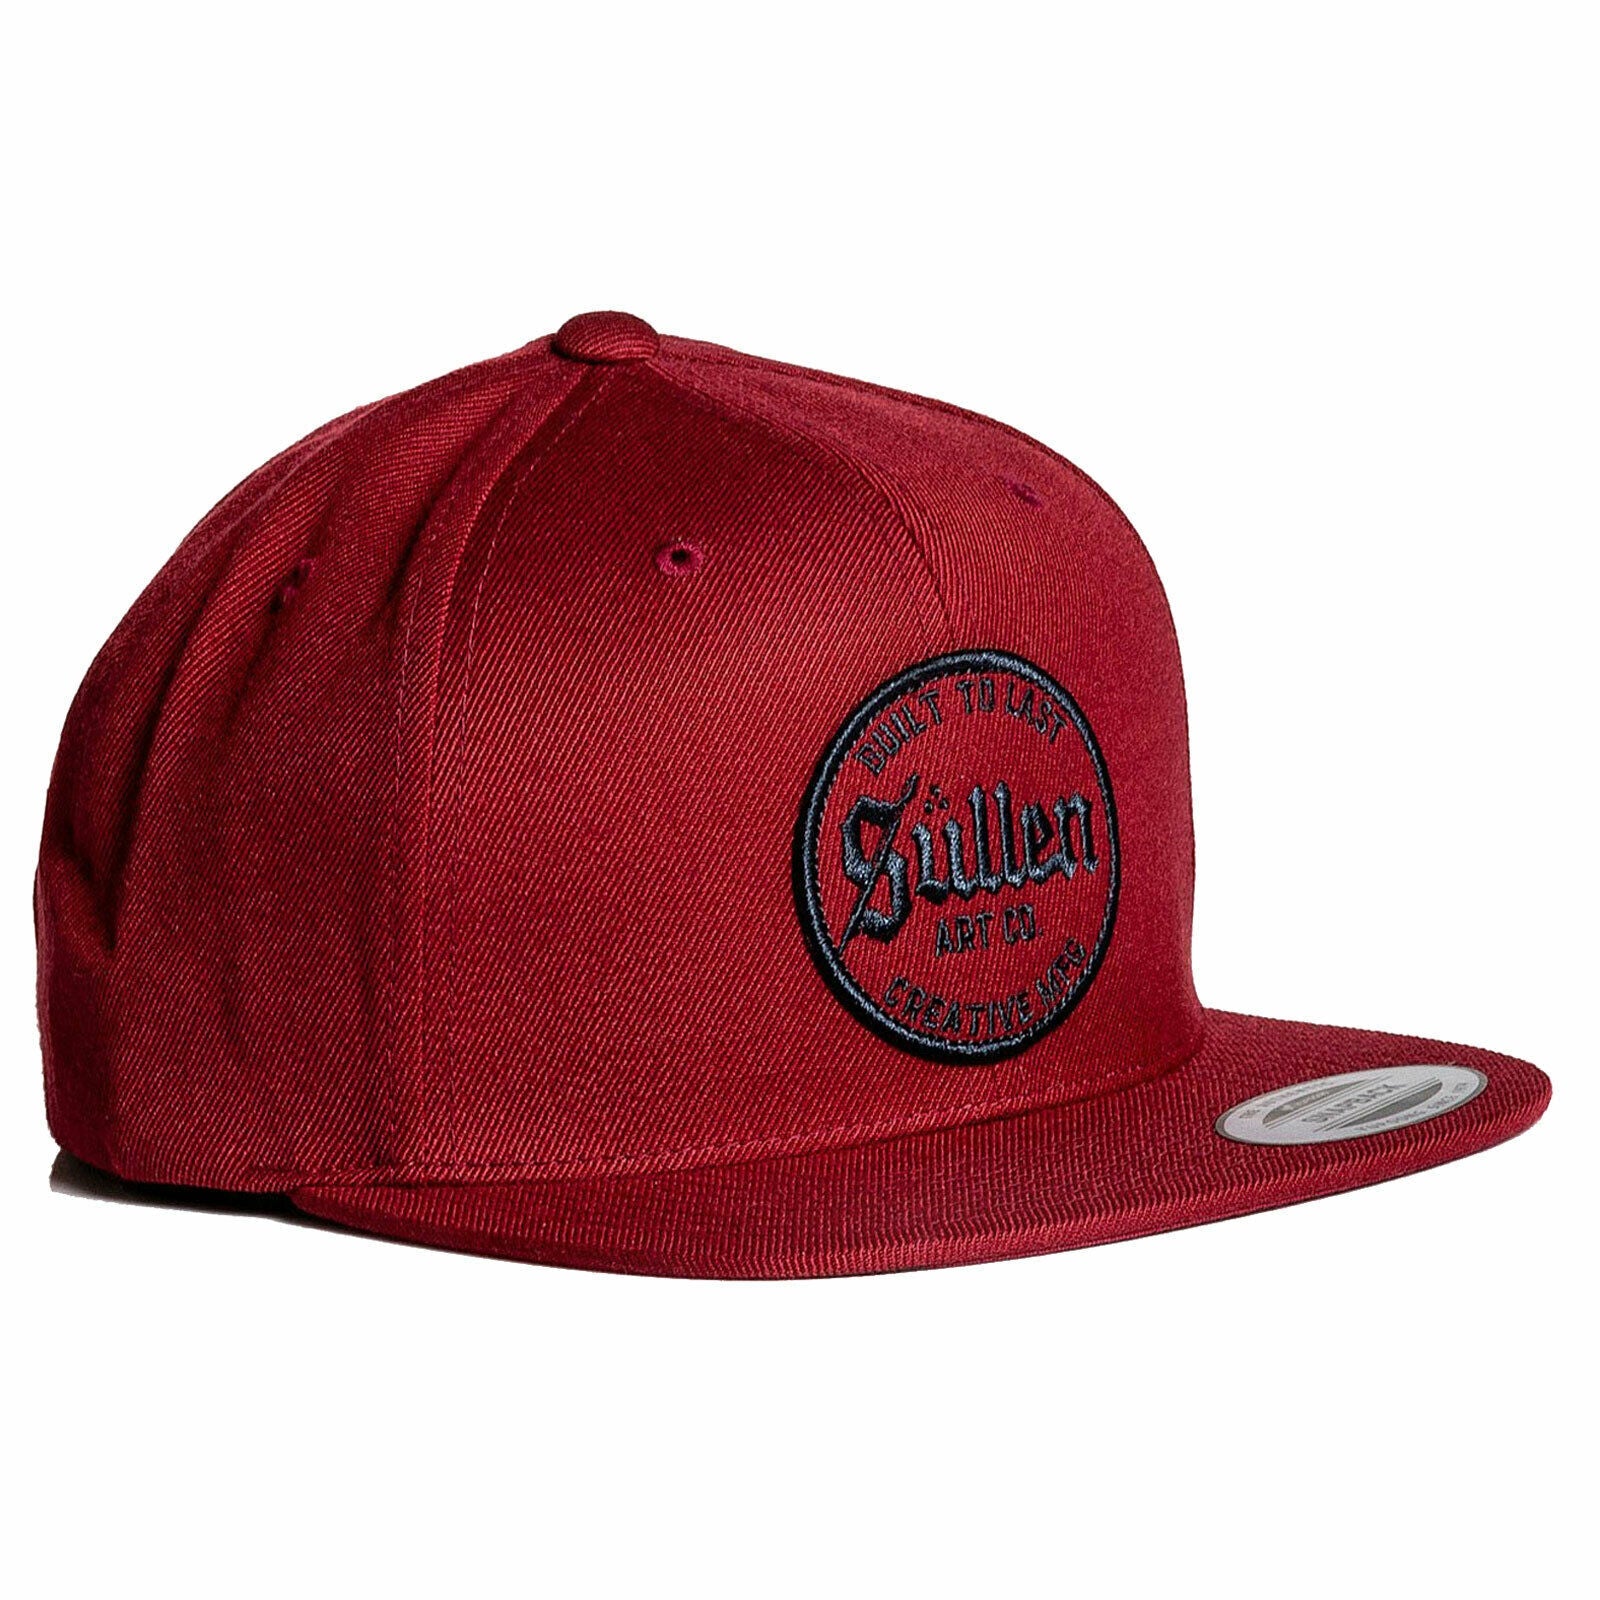 Endure Cardinal Red New Era Snapback Cap-Mens Beanies, Hats & Snapback Caps-Scarlett Dawn